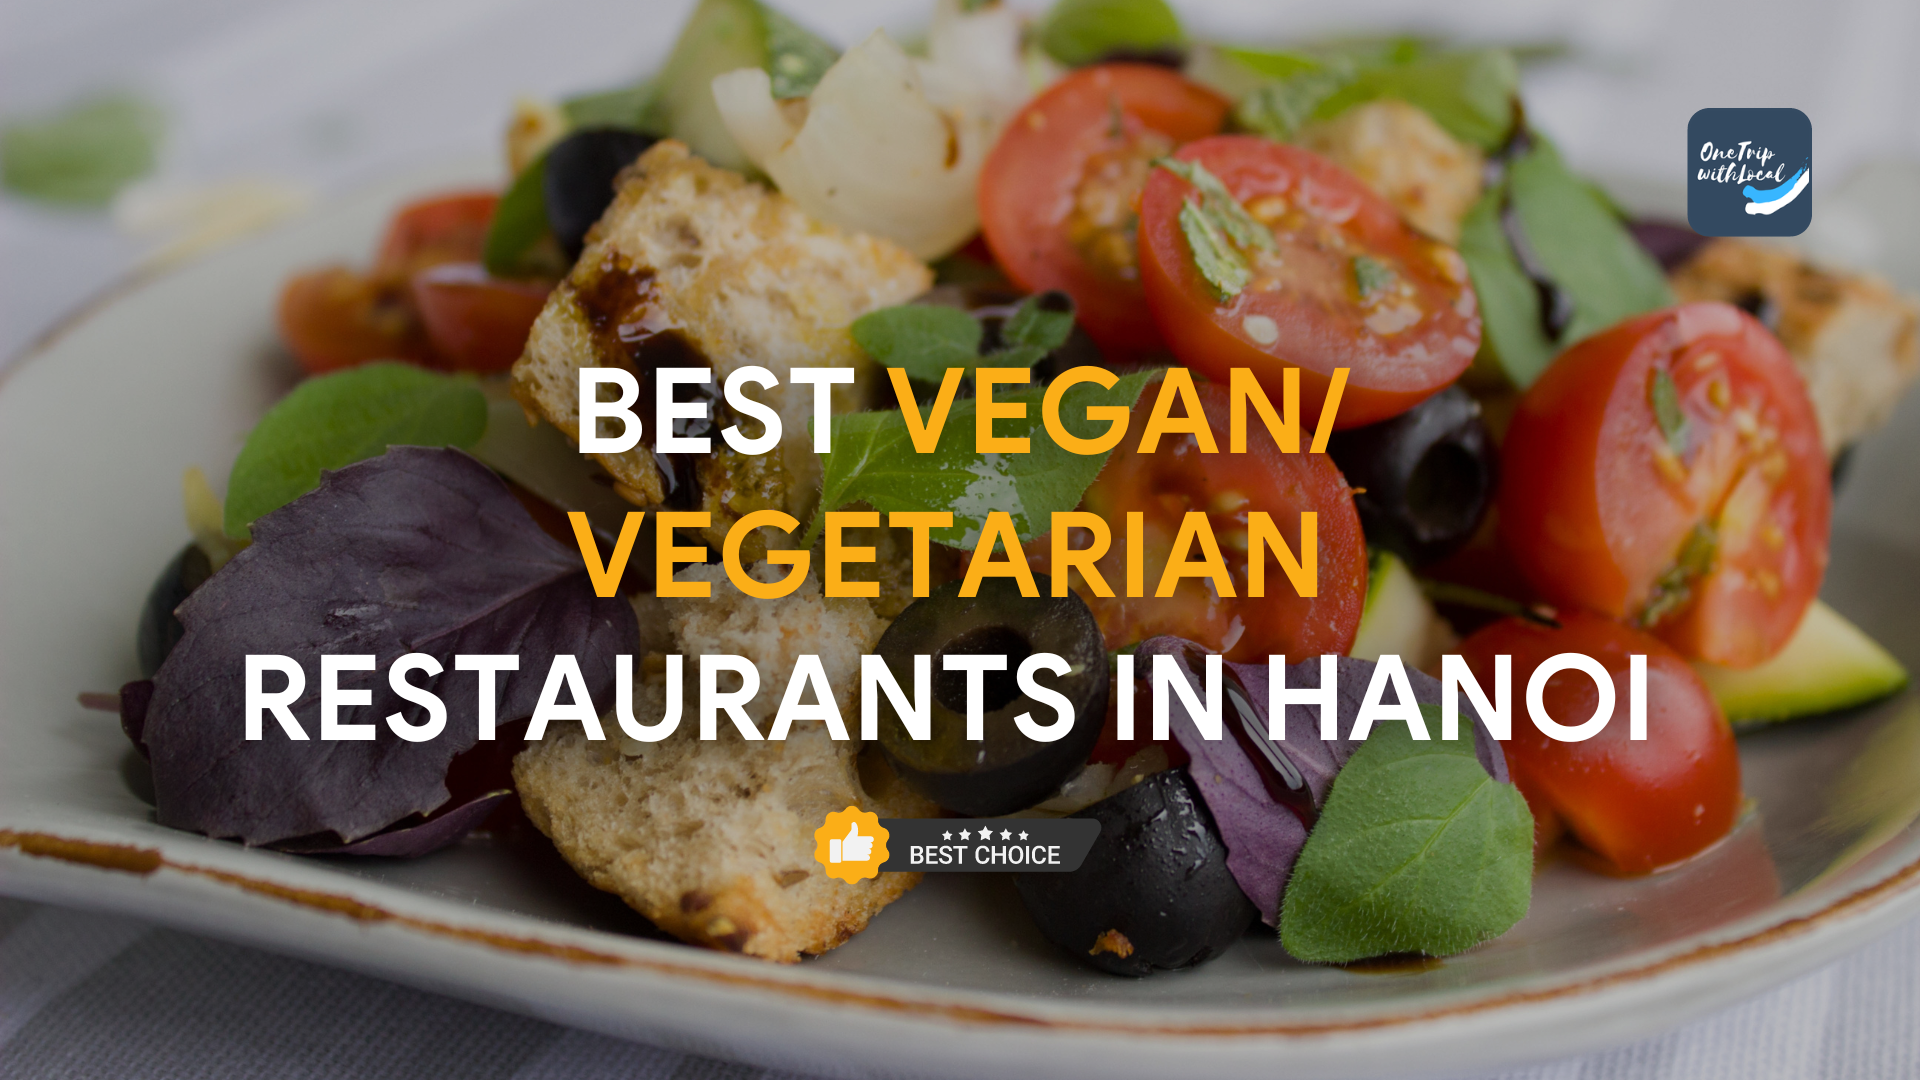 Vegan Vegetarian Restaurants in Hanoi Top 7 Vegan/Vegetarian Restaurants in Hanoi for Vegan Food